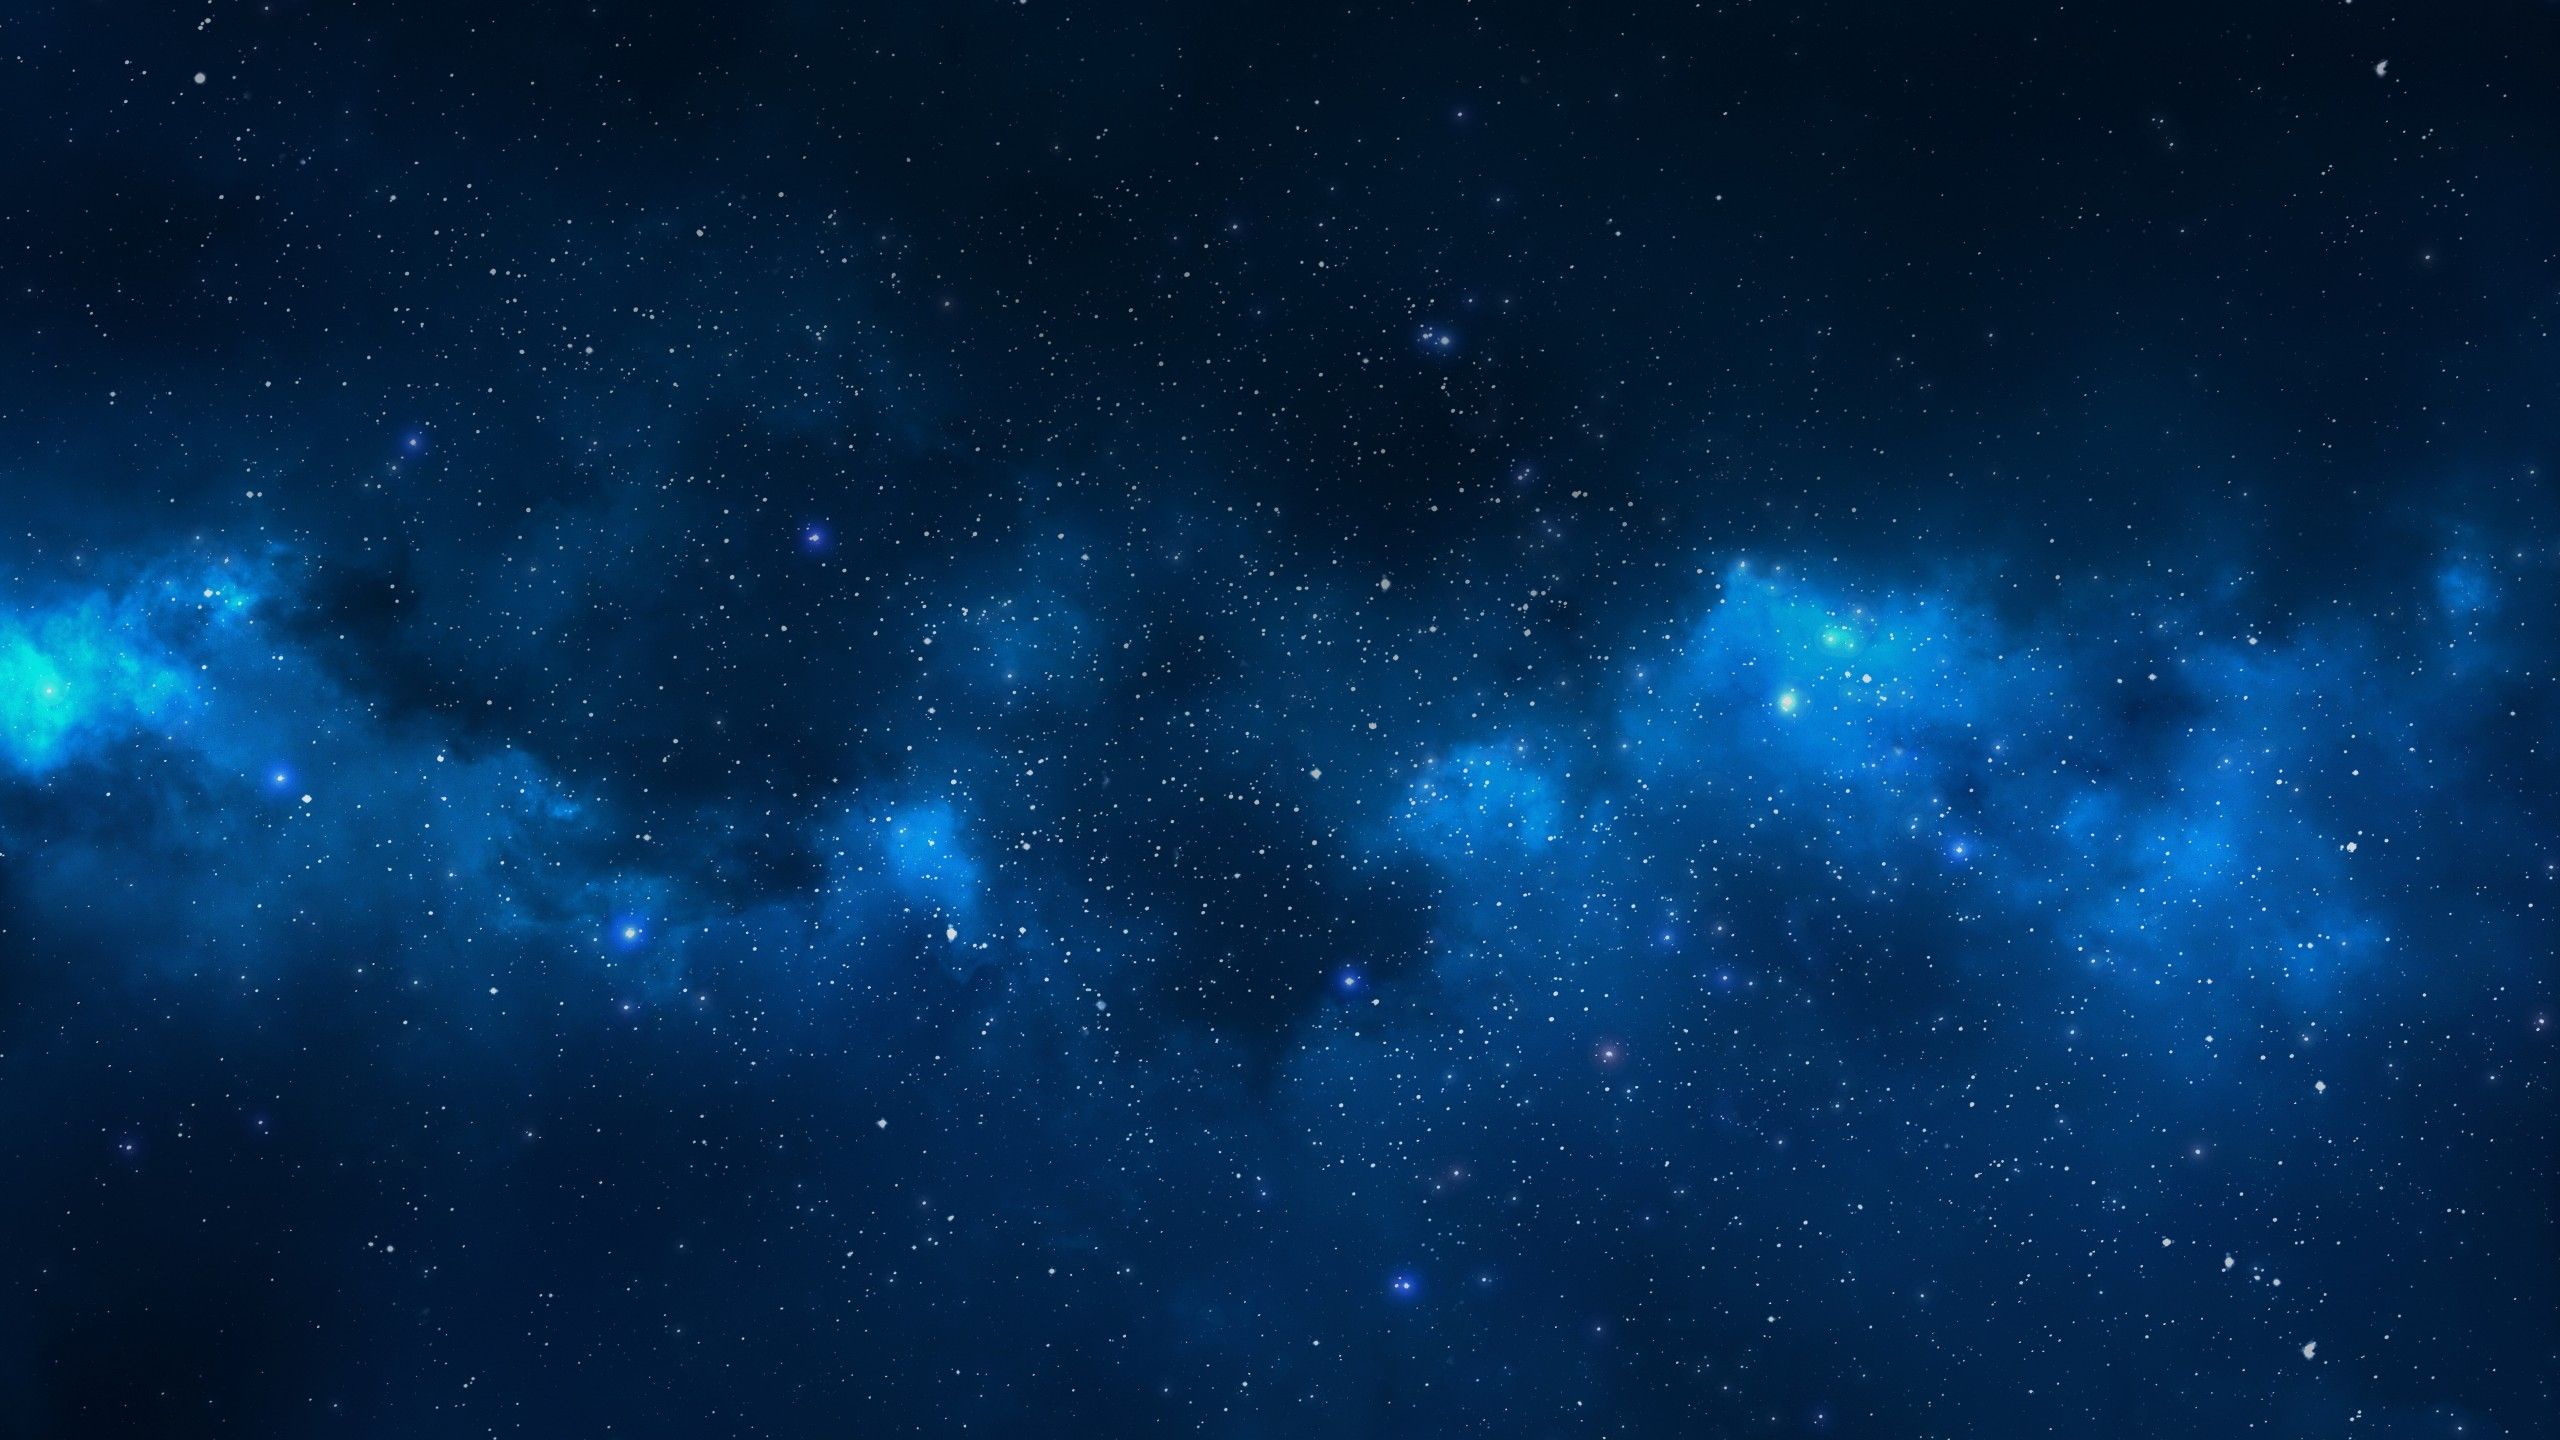 Hình ảnh đẹp Cool Blue Galaxy Stars: Hãy ngắm nhìn những ngôi sao xanh lấp lánh trong không gian bao la và thưởng thức vẻ đẹp khó tả của vũ trụ. Những màu sắc thần tiên và ánh sáng lung linh đã tạo nên một bức ảnh rực rỡ và độc đáo.